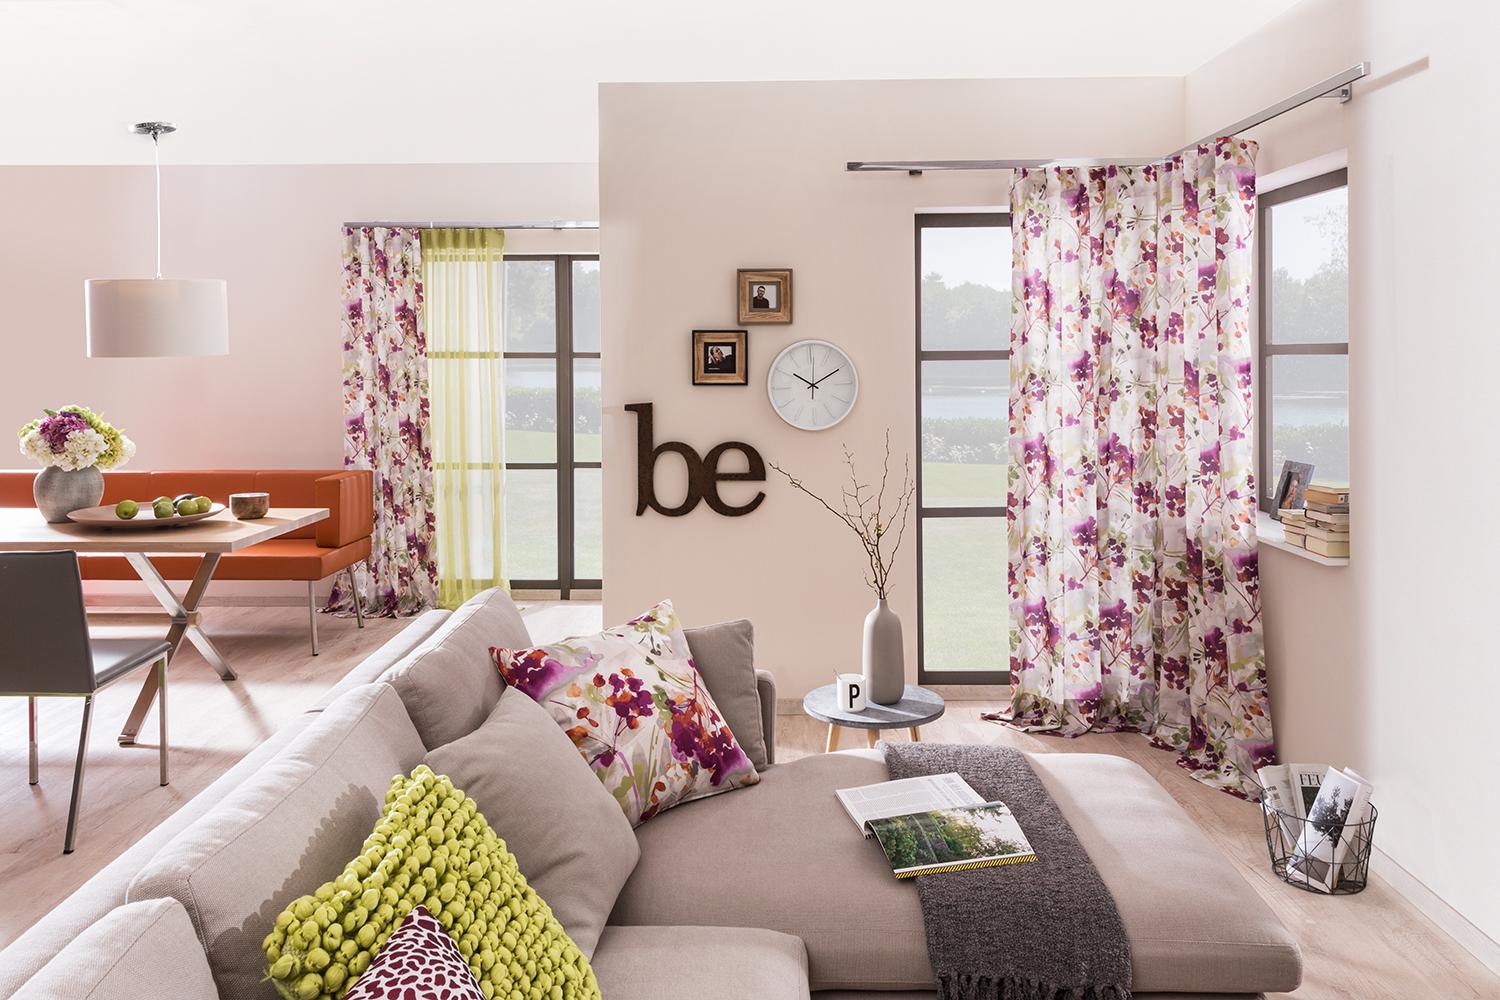 Bringen Sie Farbe in Ihr Zuhause! #bodenbelag #wohnzimmer #sofa ©SÜDBUND eG